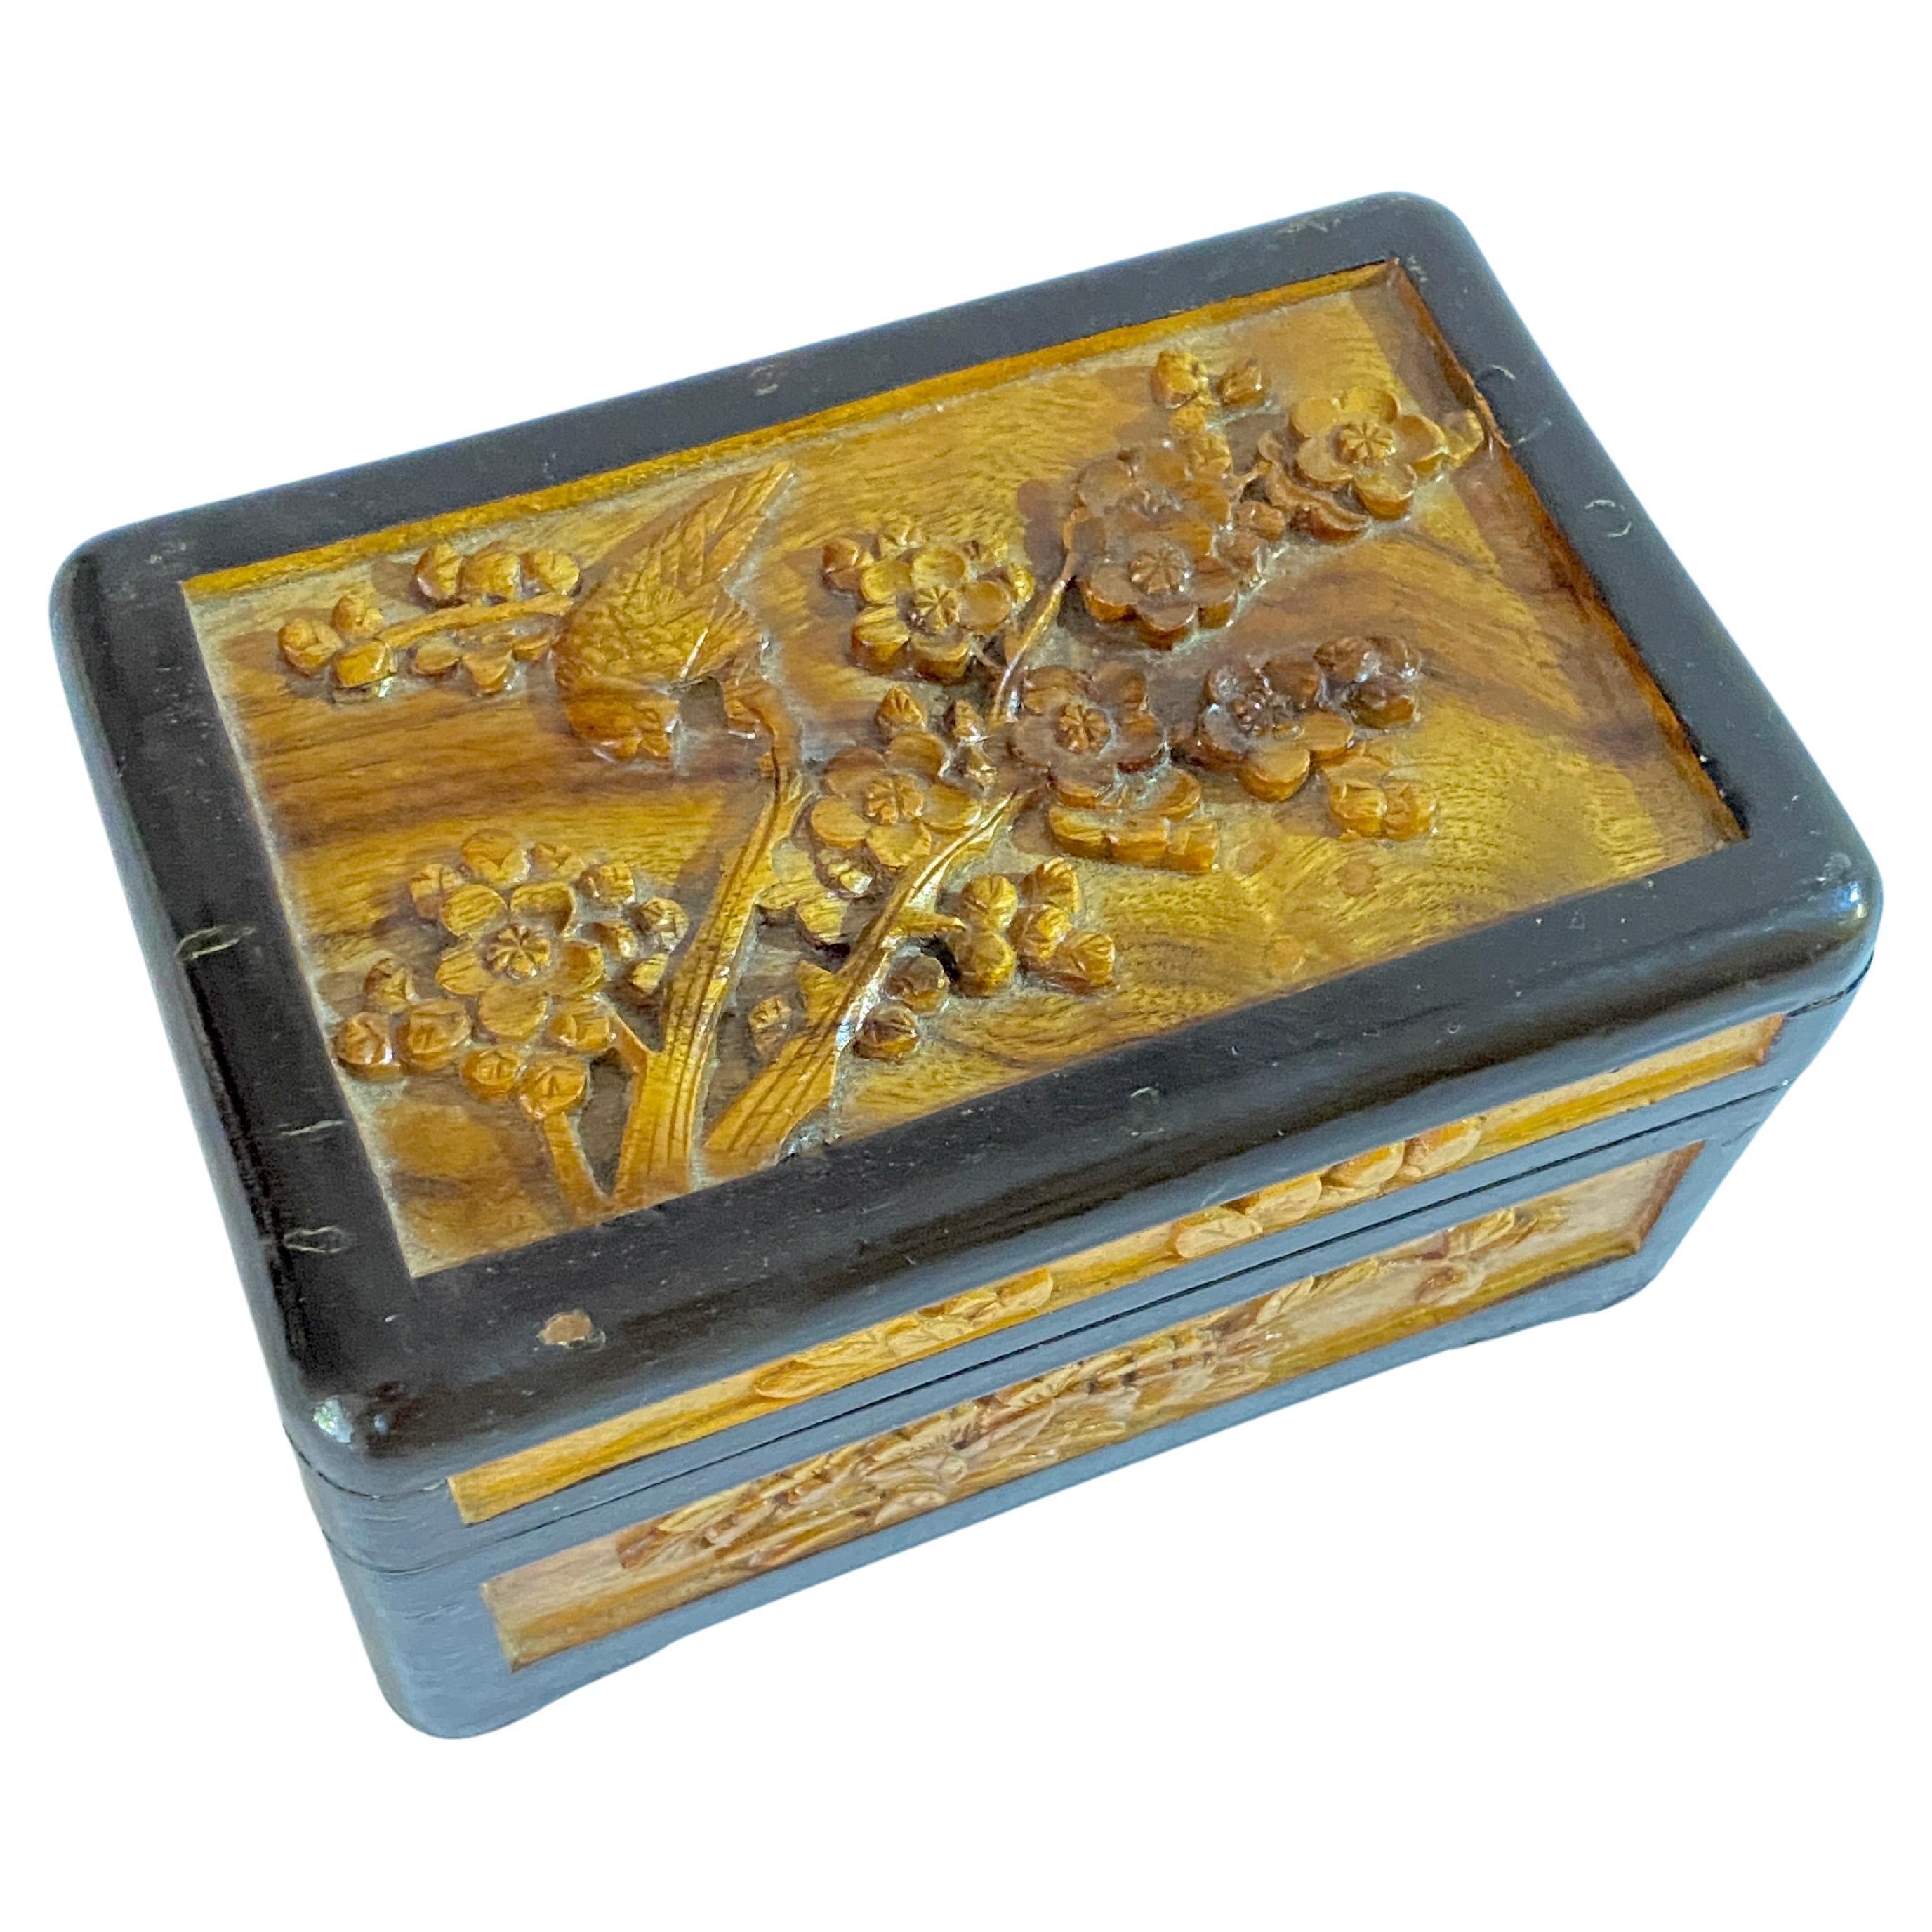 Chinesische Deko- oder Schmuckschatulle, in geschnitztem Holz, Bäumen und Vögeln Dekor, China